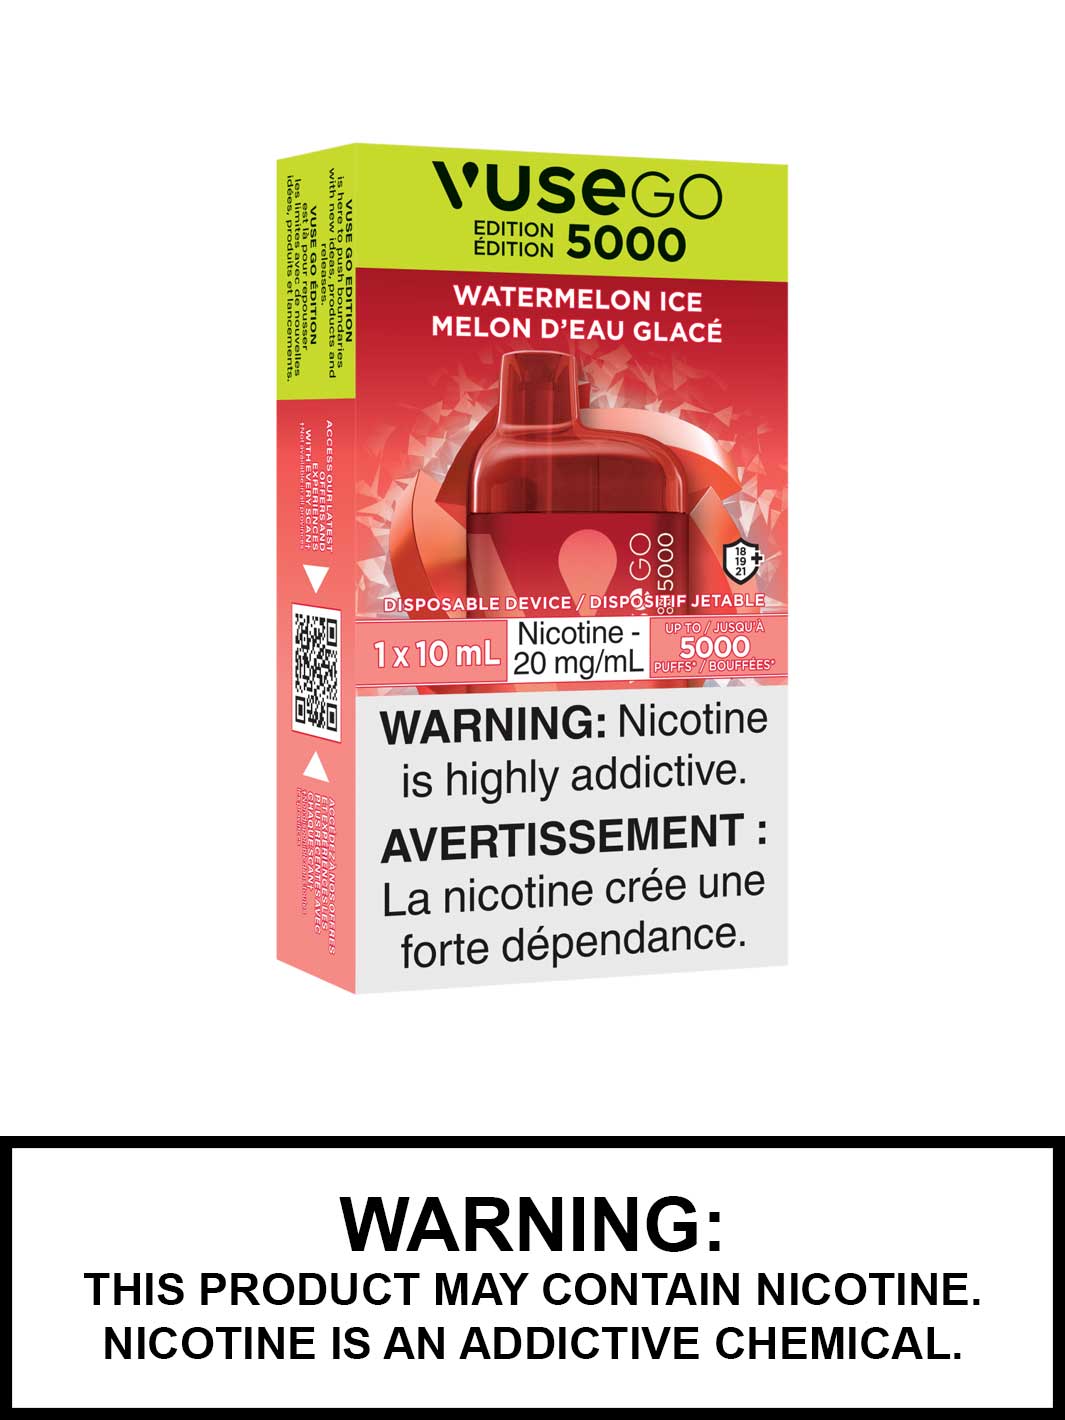 Watermelon Ice Vuse Go 5000 Edition, Vuse Go Disposable Vape Canada, Vape360